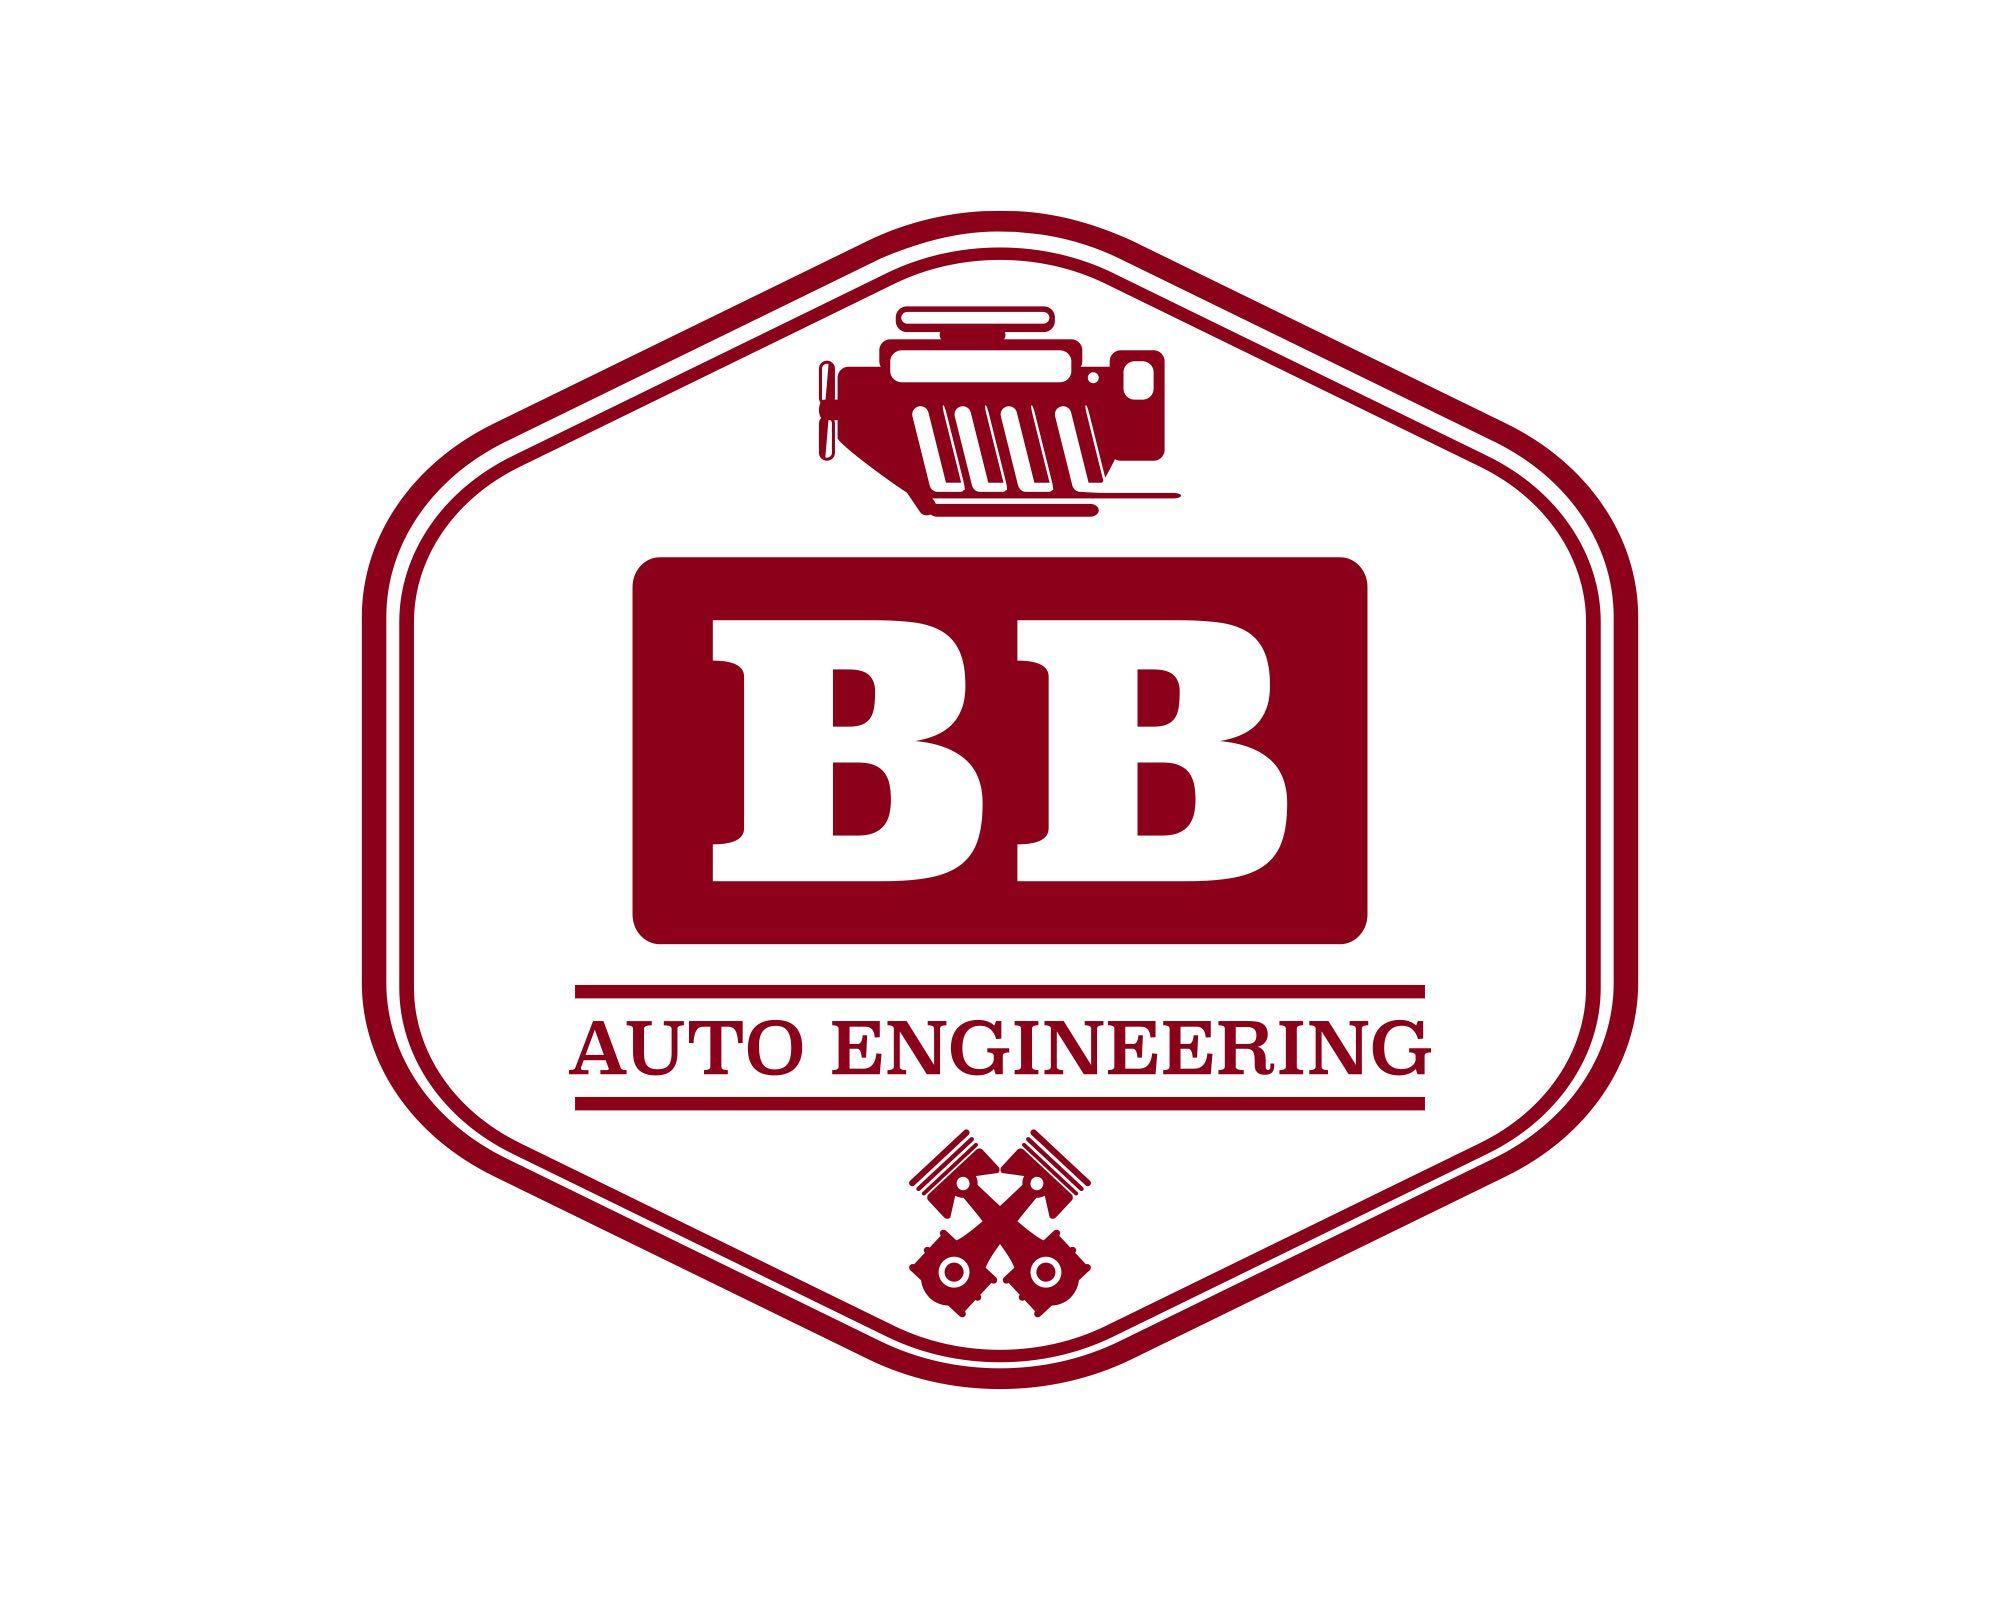 Auto Engineering Logo - BB AUTO ENGINEERING. Logo design